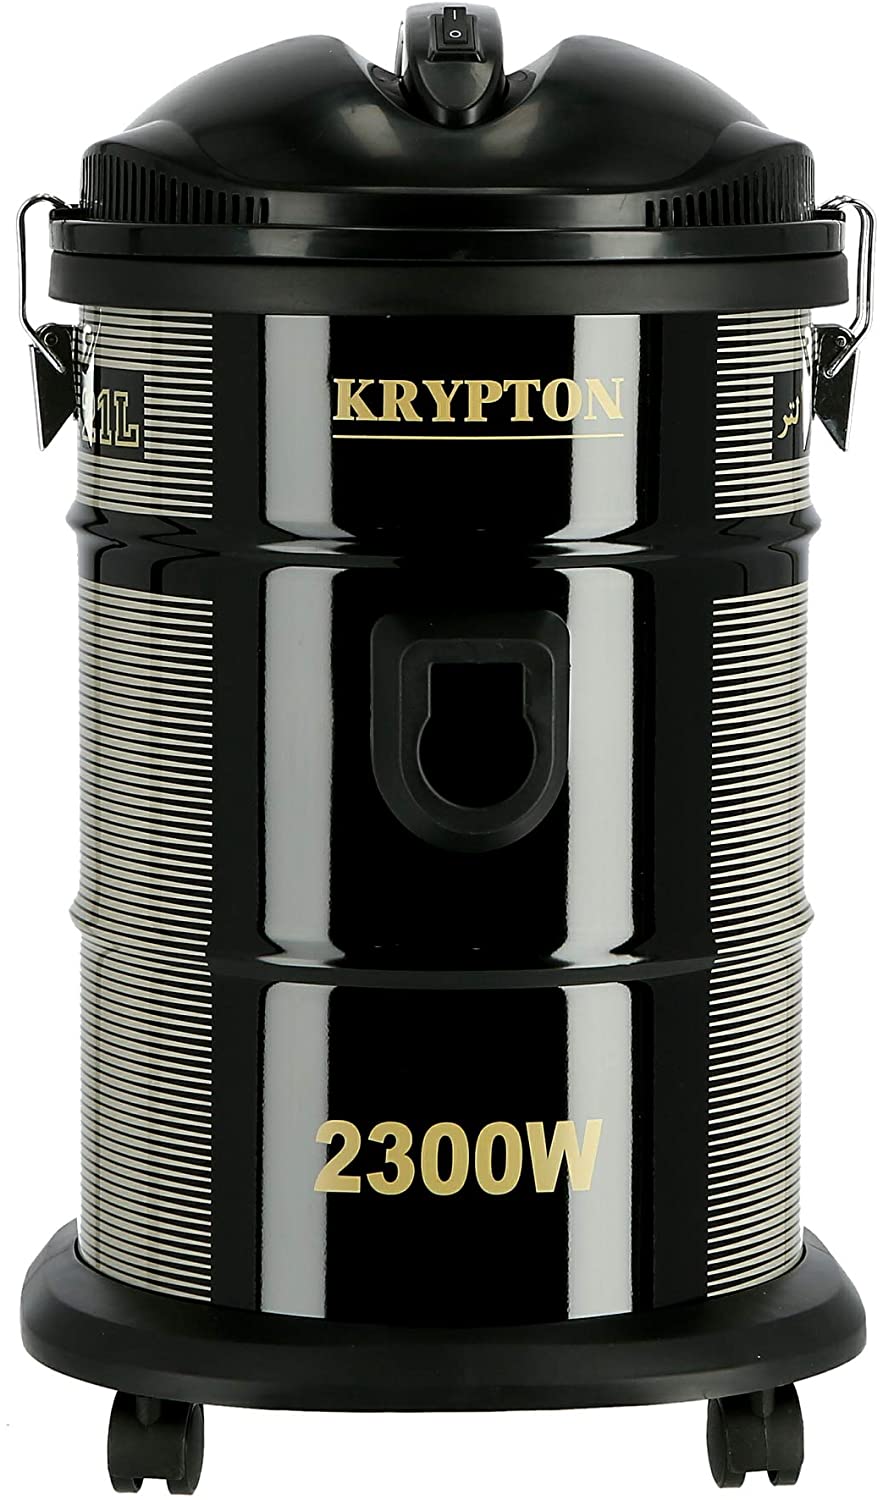 Krypton 2300 Watts Dry Vacuum Cleaner 21 Liter Black